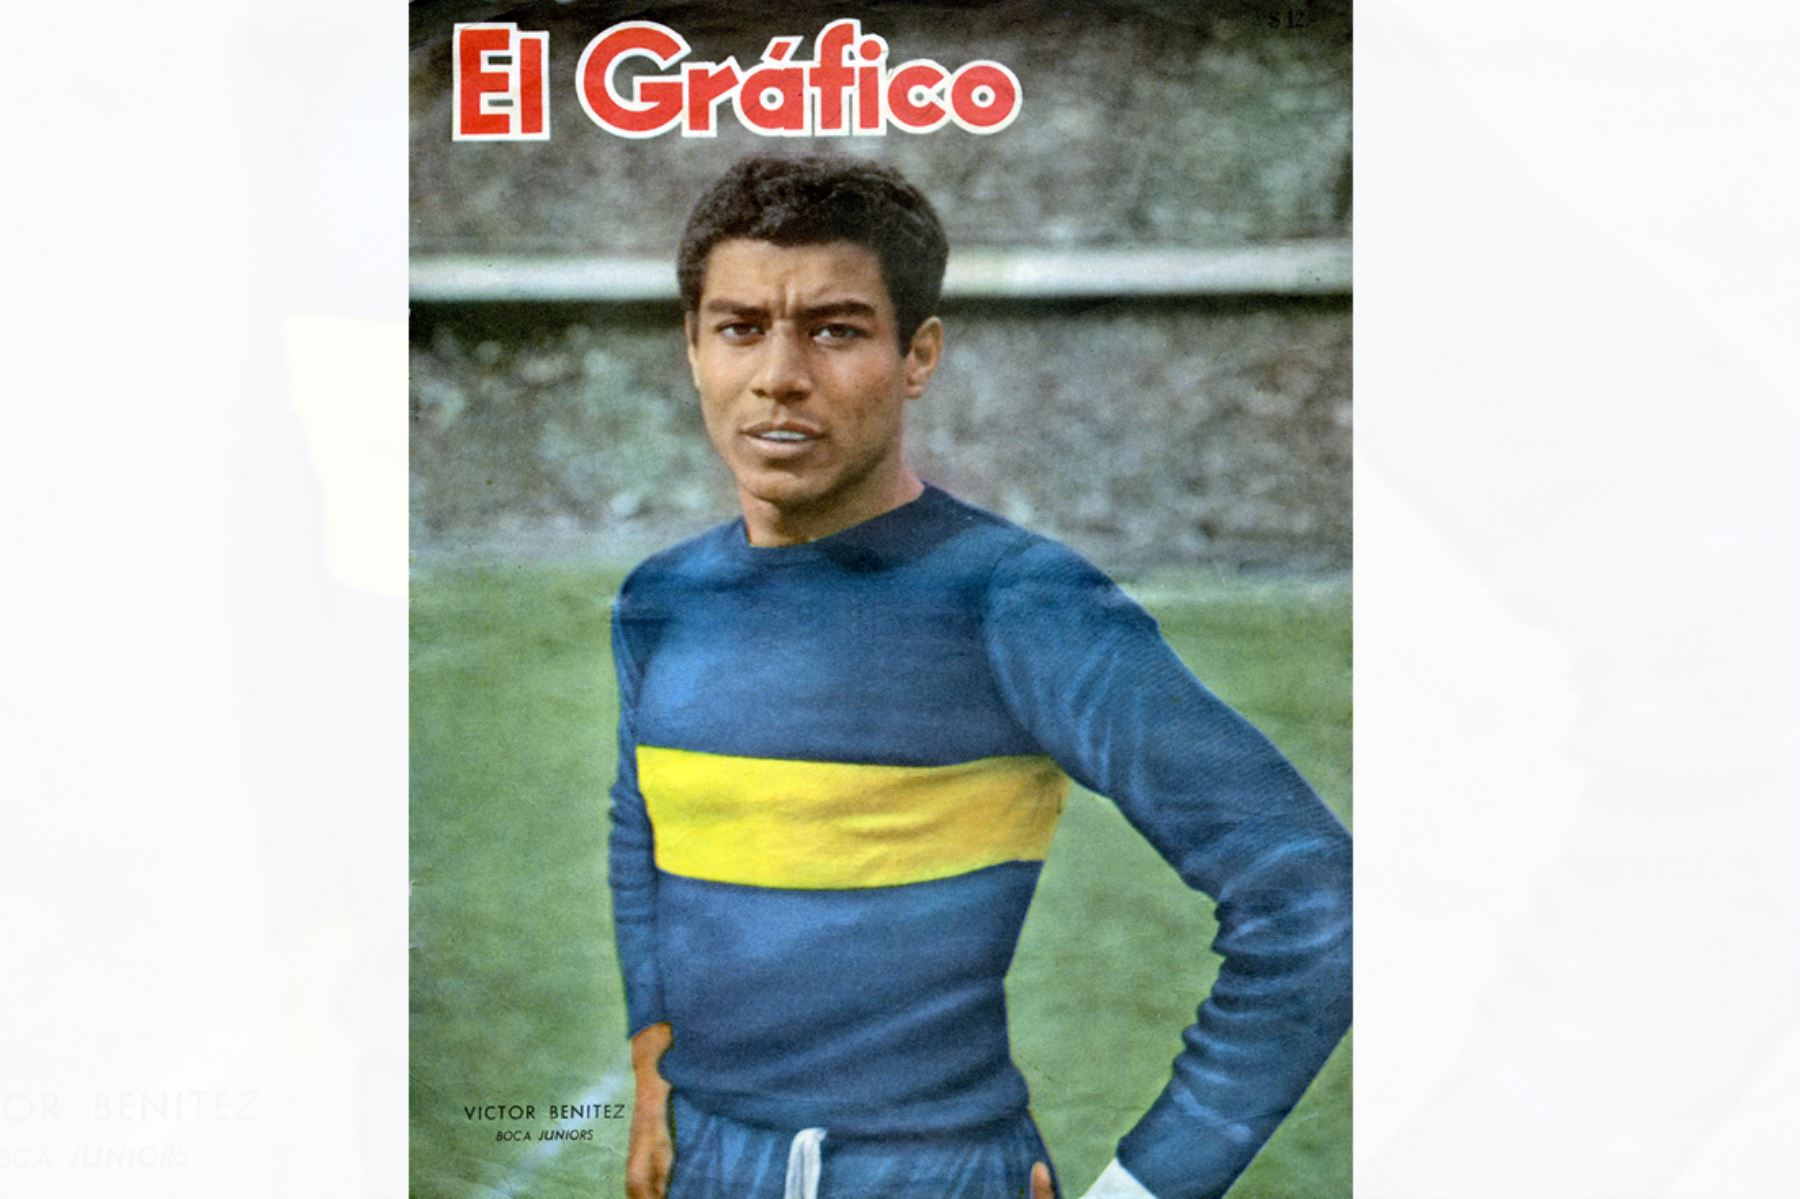 La revista argentina El Gráfico con el peruano Víctor Benítez en portada.